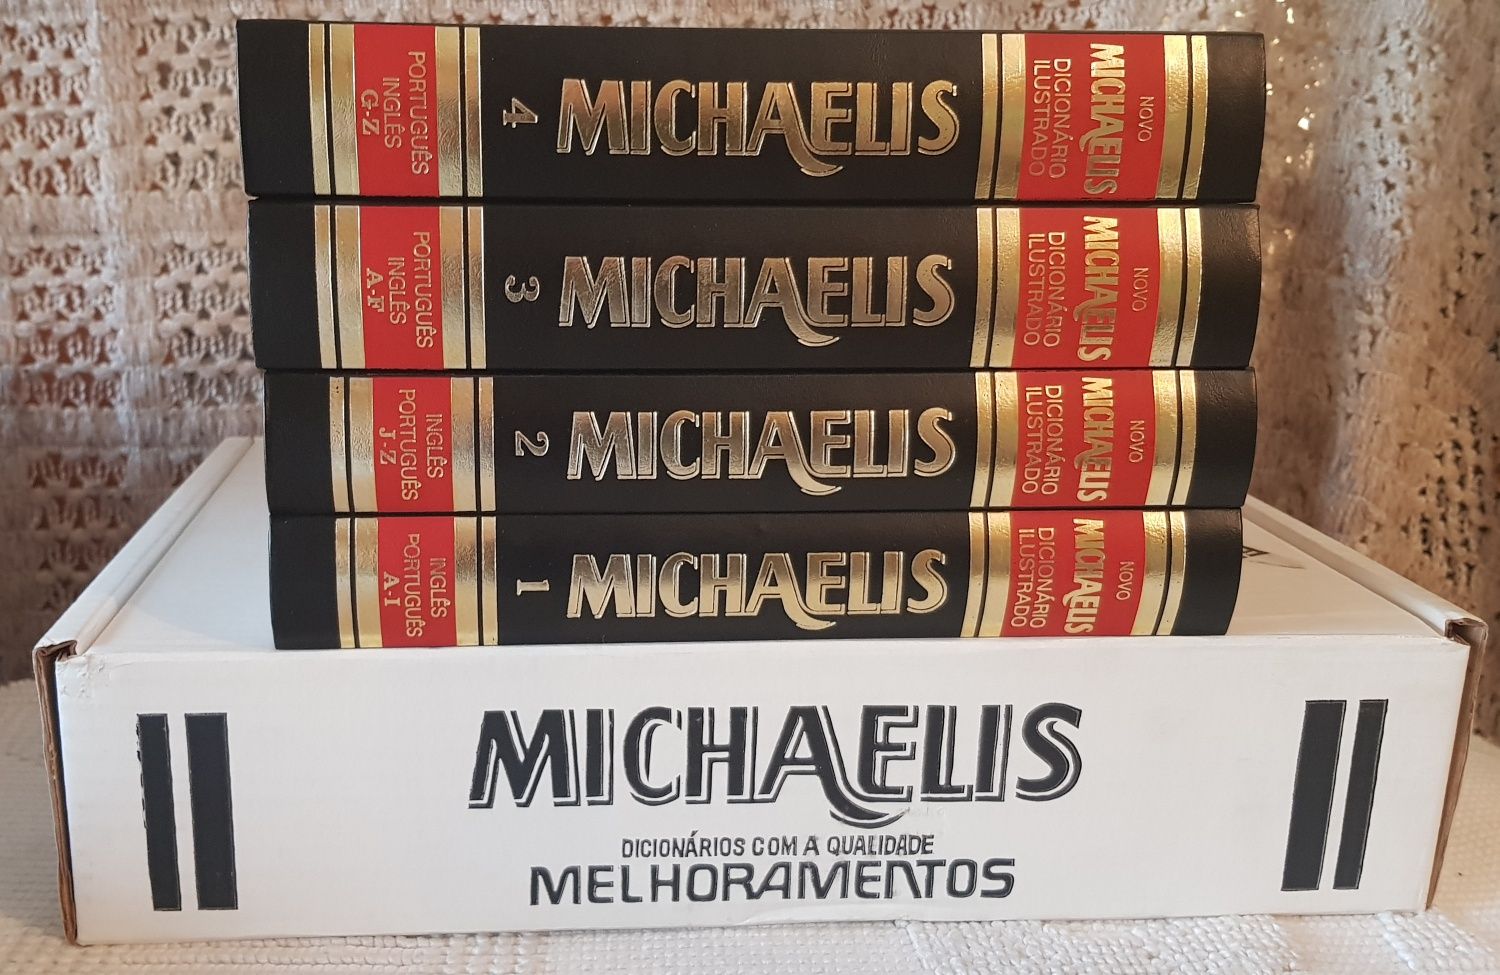 Dicionários Carolina Michaelis - 4 livros novos na caixa original